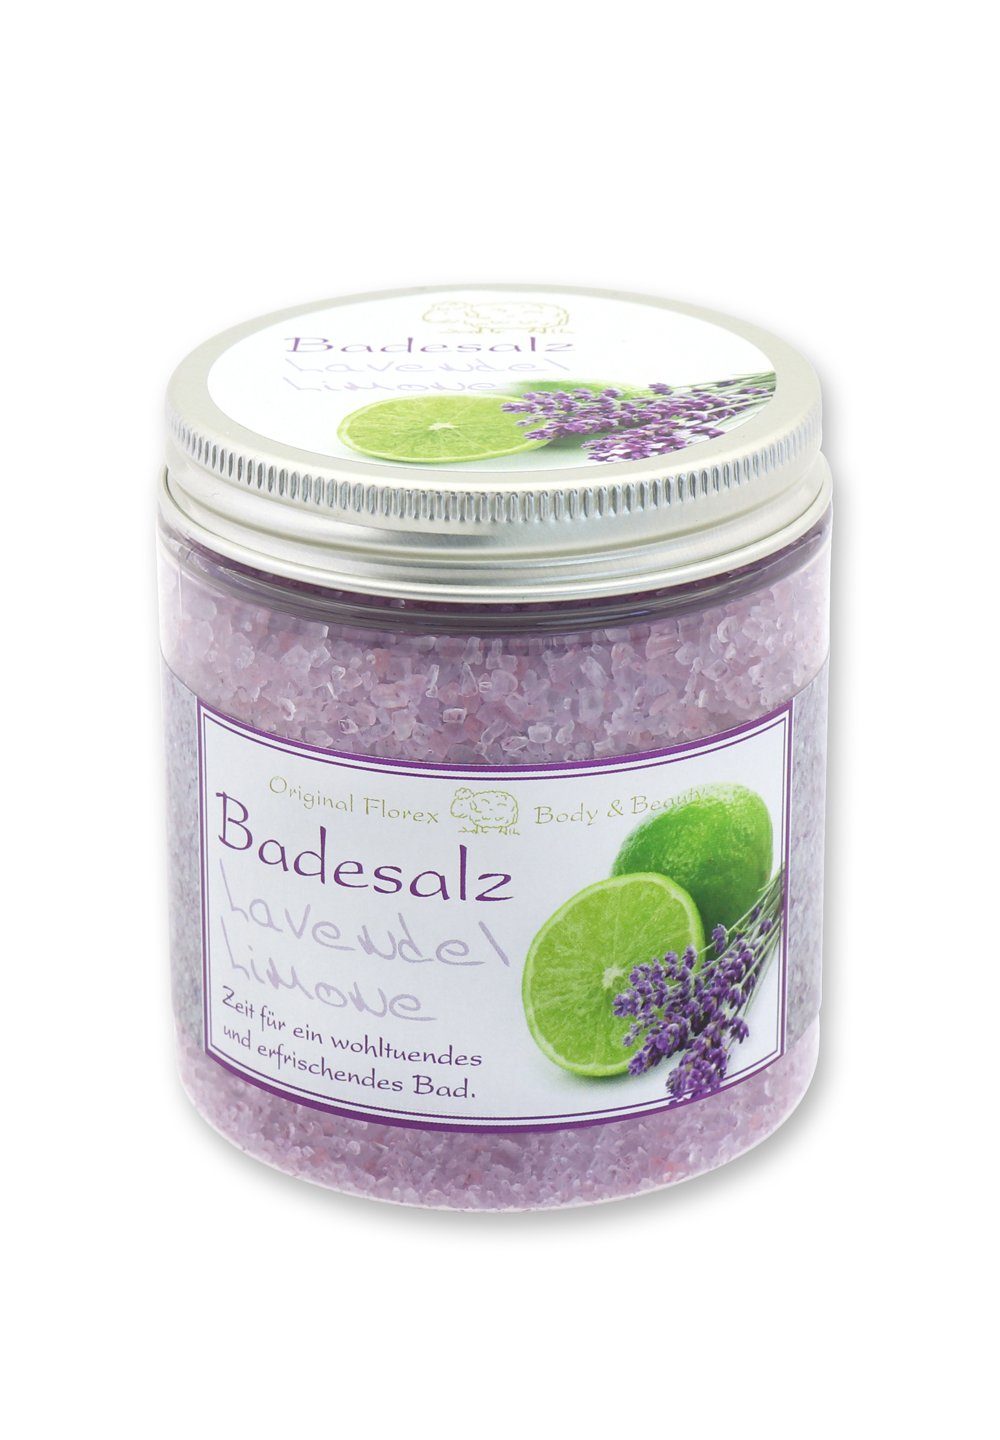 Schafmilch Badezusatz Lavendel-Limone, Badesalz Badezusatz Gerlinde Bio mit Florex _ 300 Hofer GmbH g